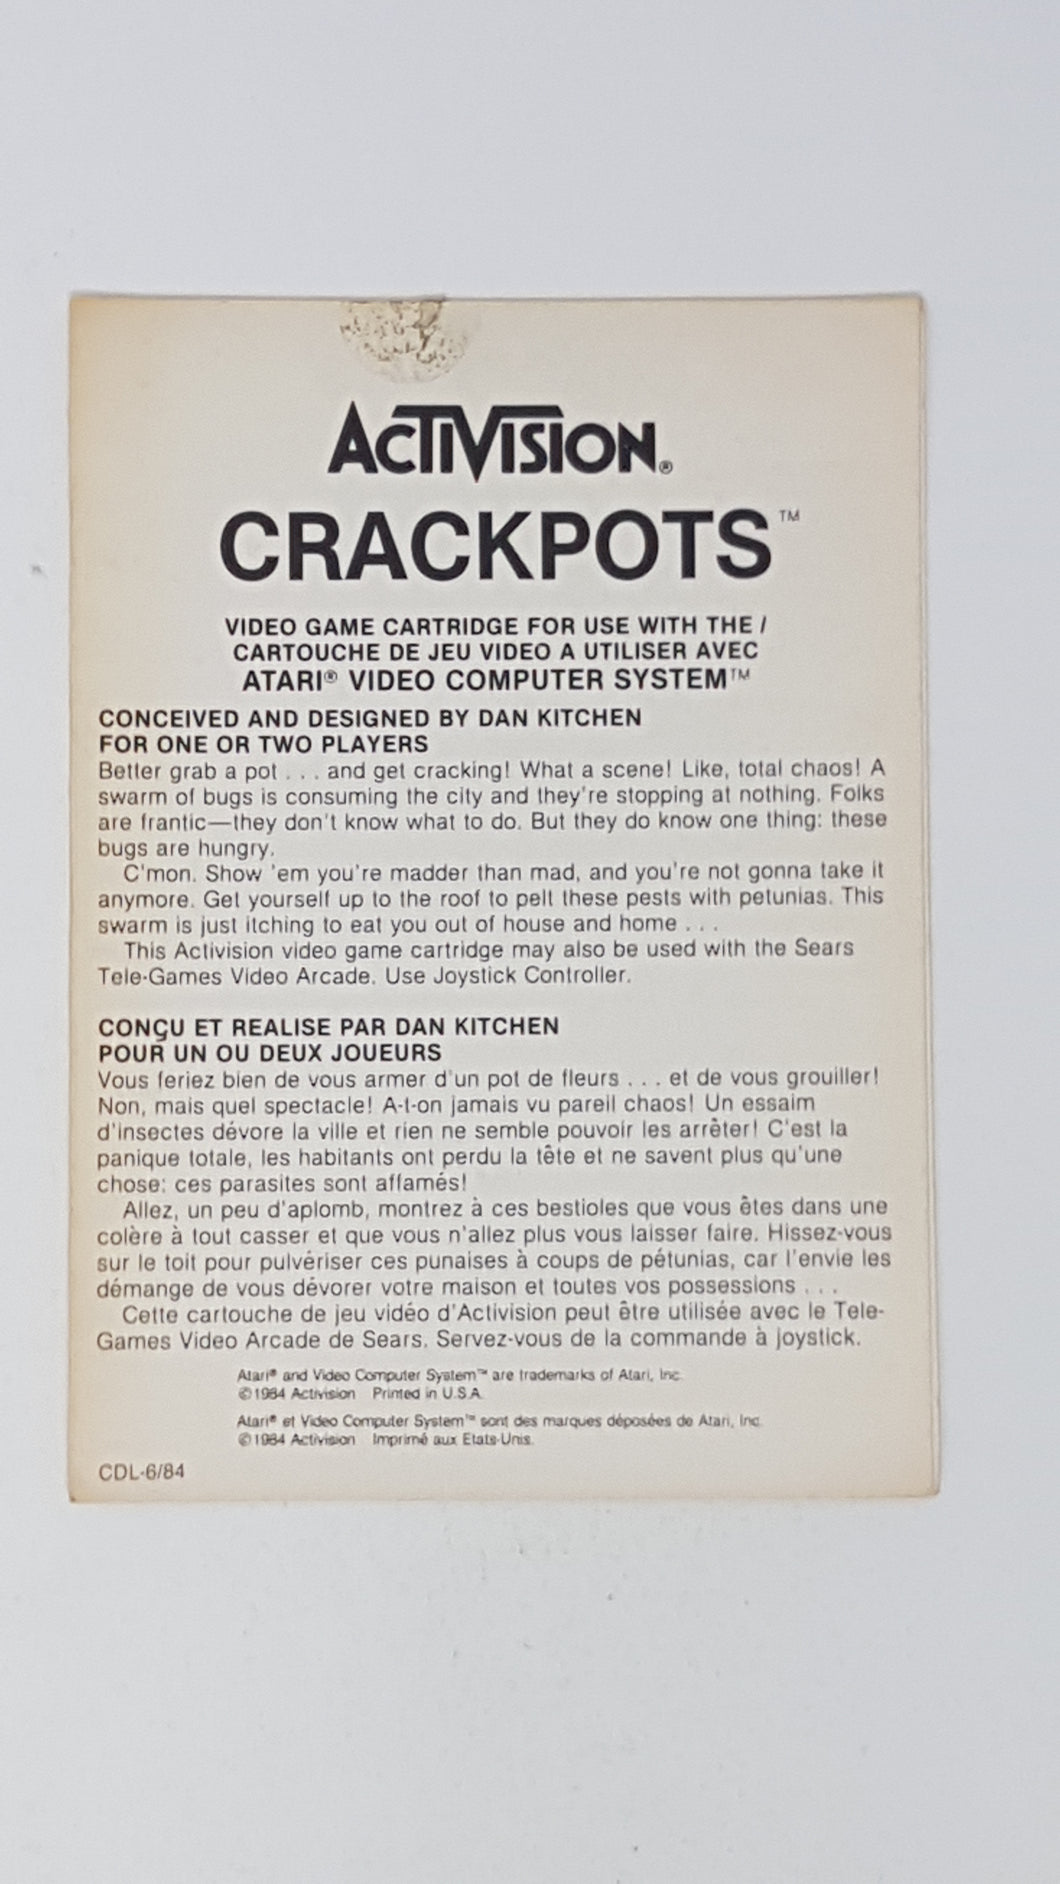 Crackpots [Insert] - Atari 2600